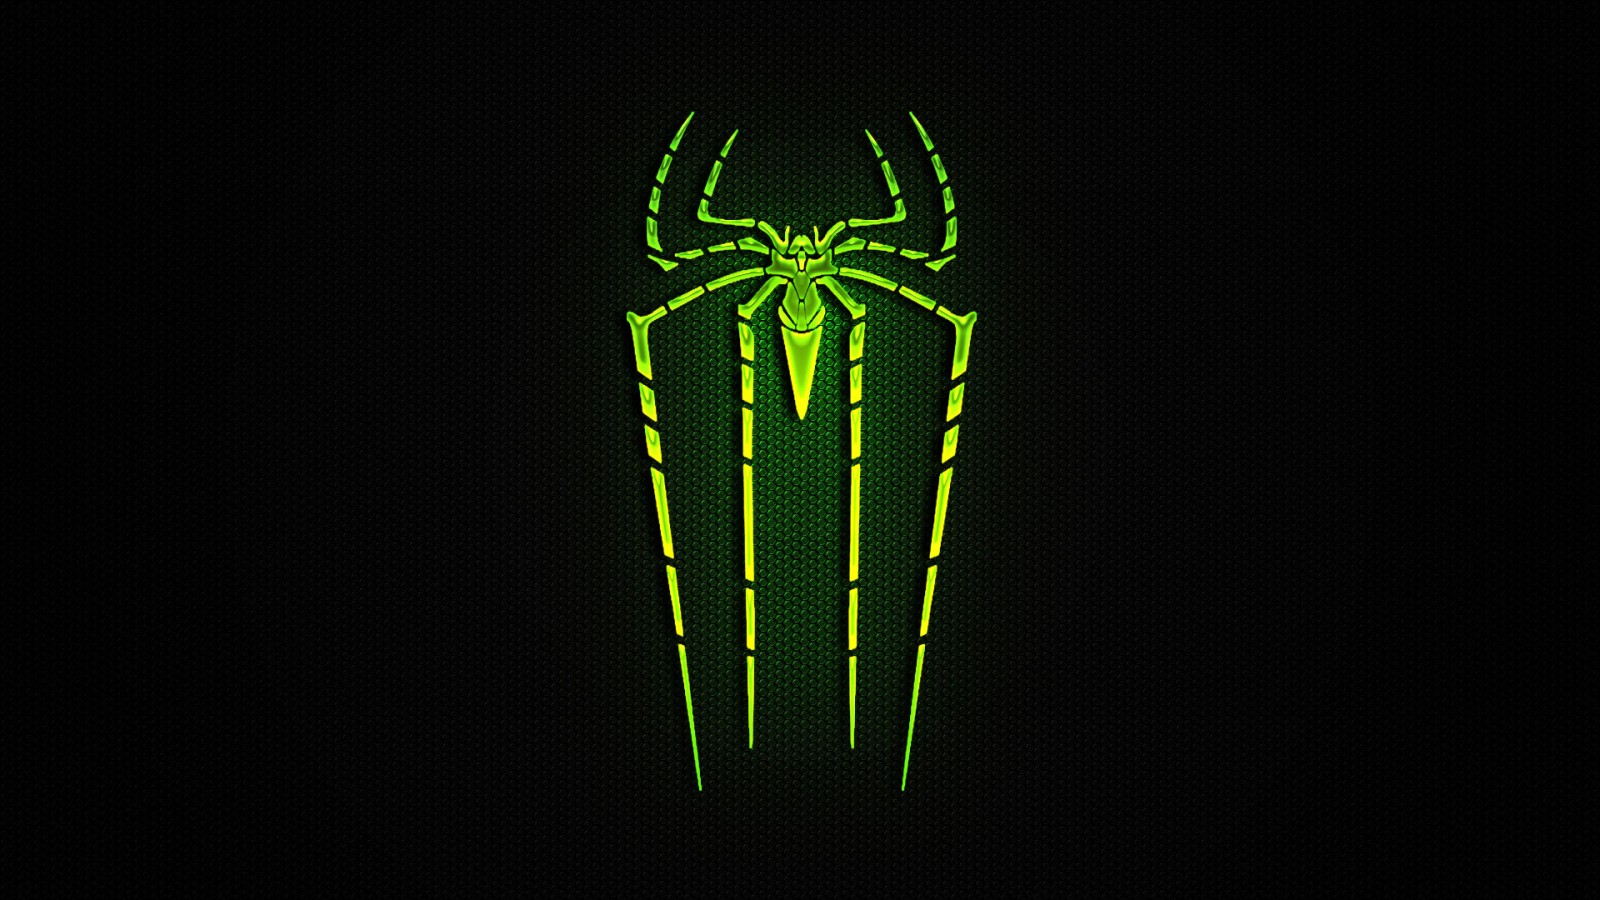  Spiderman Green Logo Wallpaper   1600x900 iWallHD   Wallpaper HD